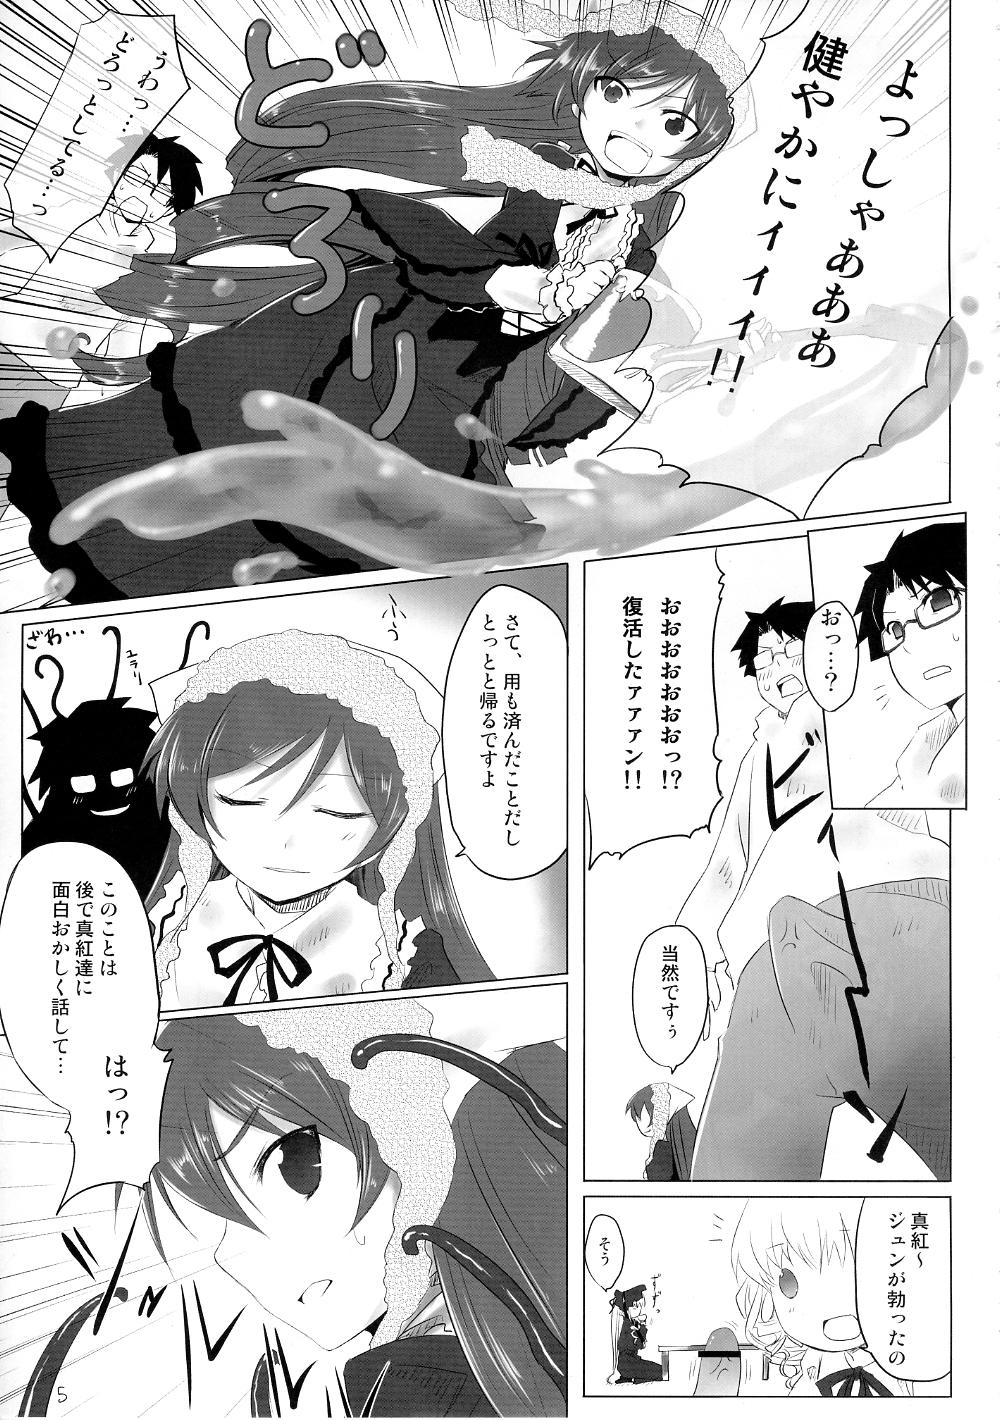 Pendeja Sukoyaka ni!! - Rozen maiden Cruising - Page 4